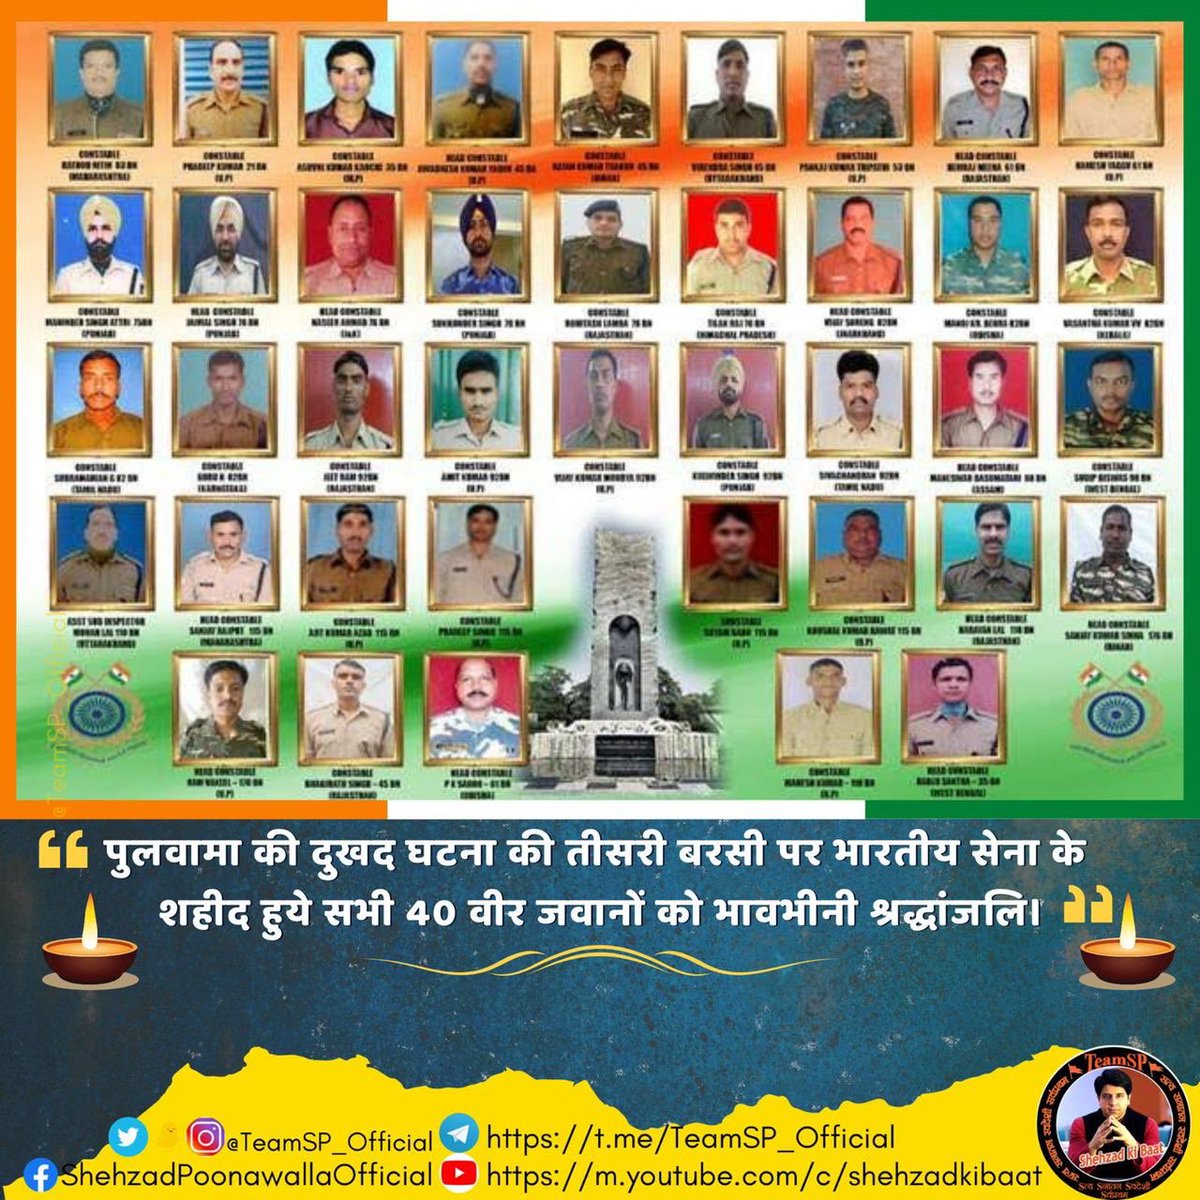 पुलवामा में शहीद हुये भारतीय सेना के सभी 40 वीर जवानों को #TeamSP की ओर से भावभीनी श्रद्धांजलि 🙏🏻